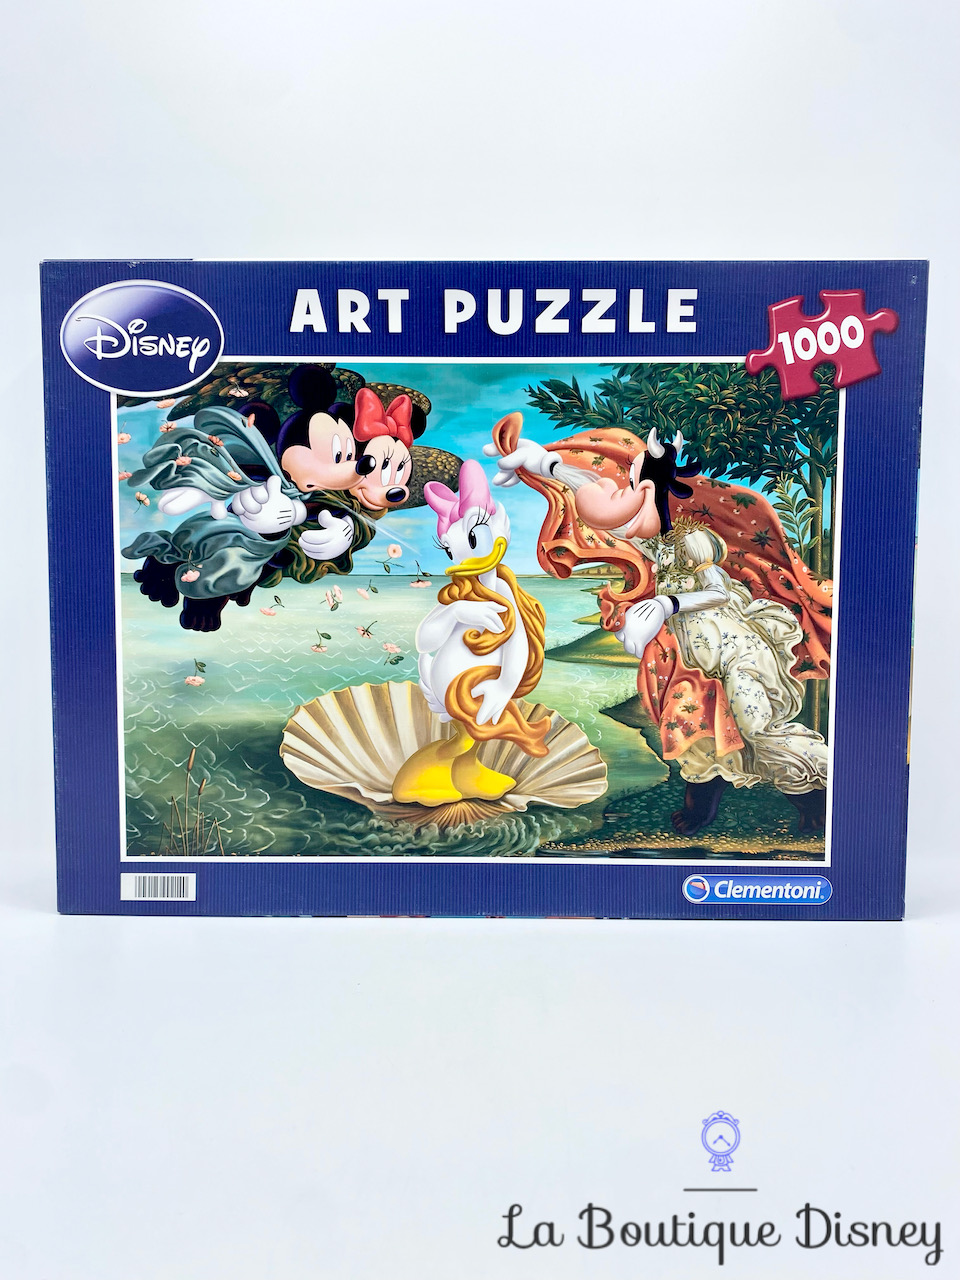 Puzzle 1000 Pièces Art Puzzle Mickey Minnie Daisy Clarabelle Naissance de Vénus Disney Clementoni N°99214 tableau peinture